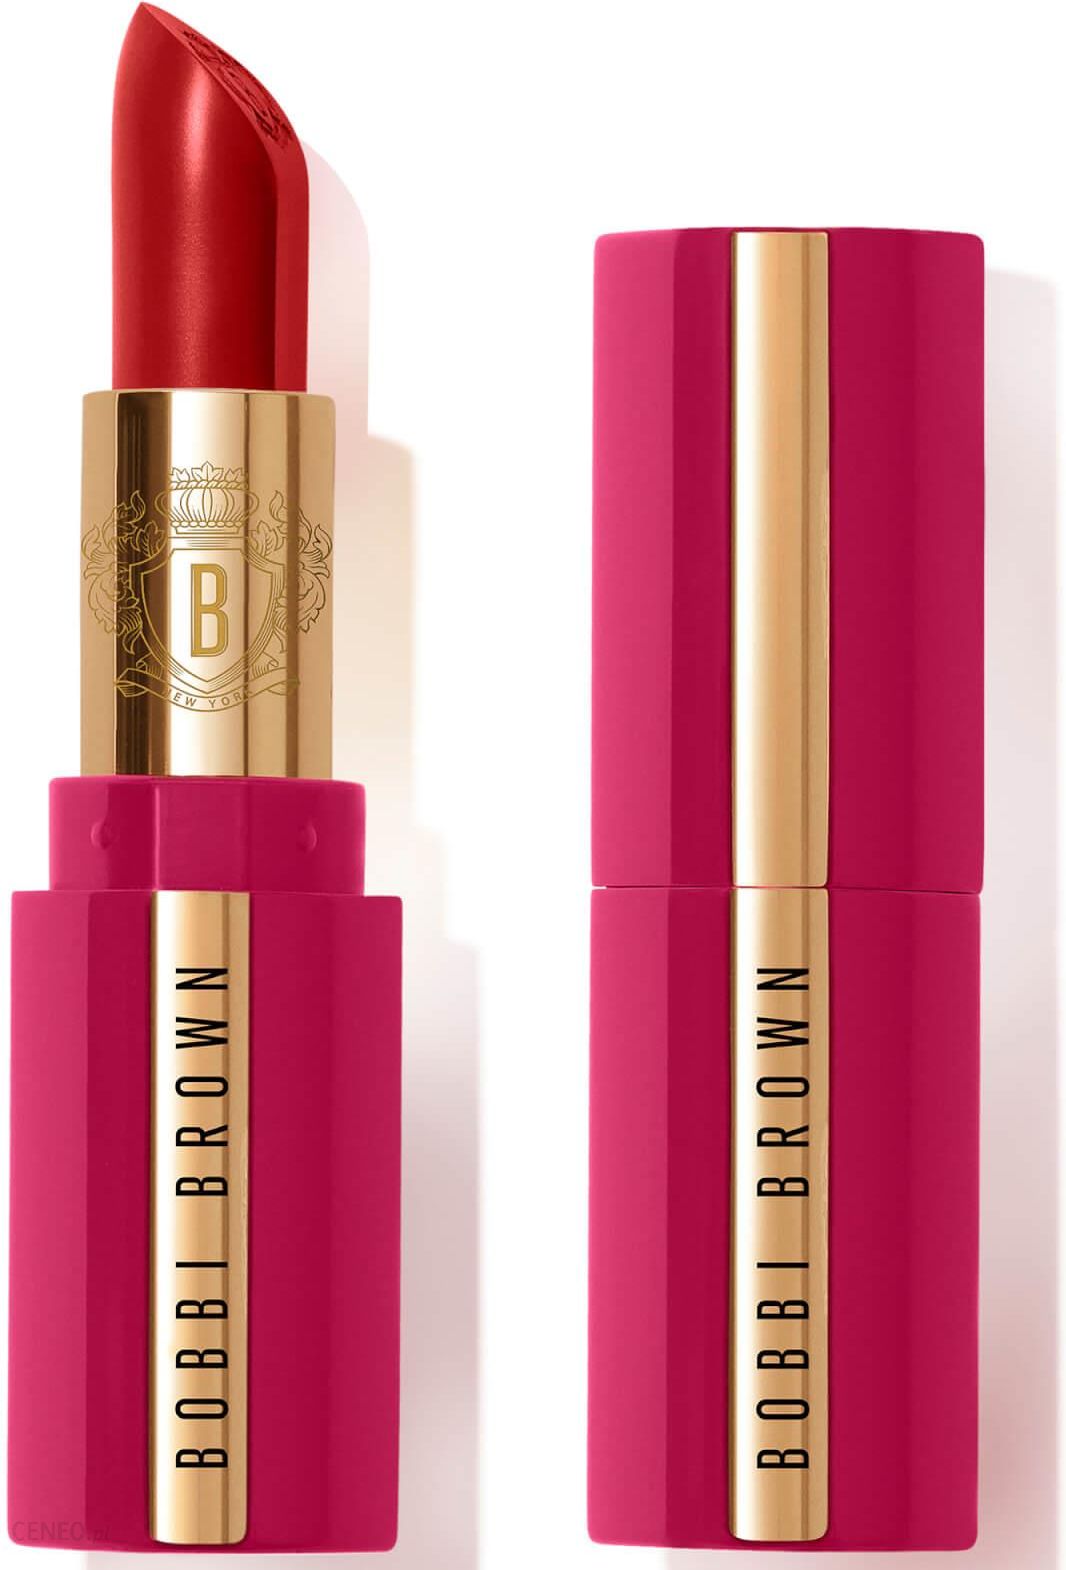 Bobbi Brown Lunar New Year Luxe Lipstick Luksusowa Szminka O Działaniu Nawilżającym Odcień Spiced Maple 3